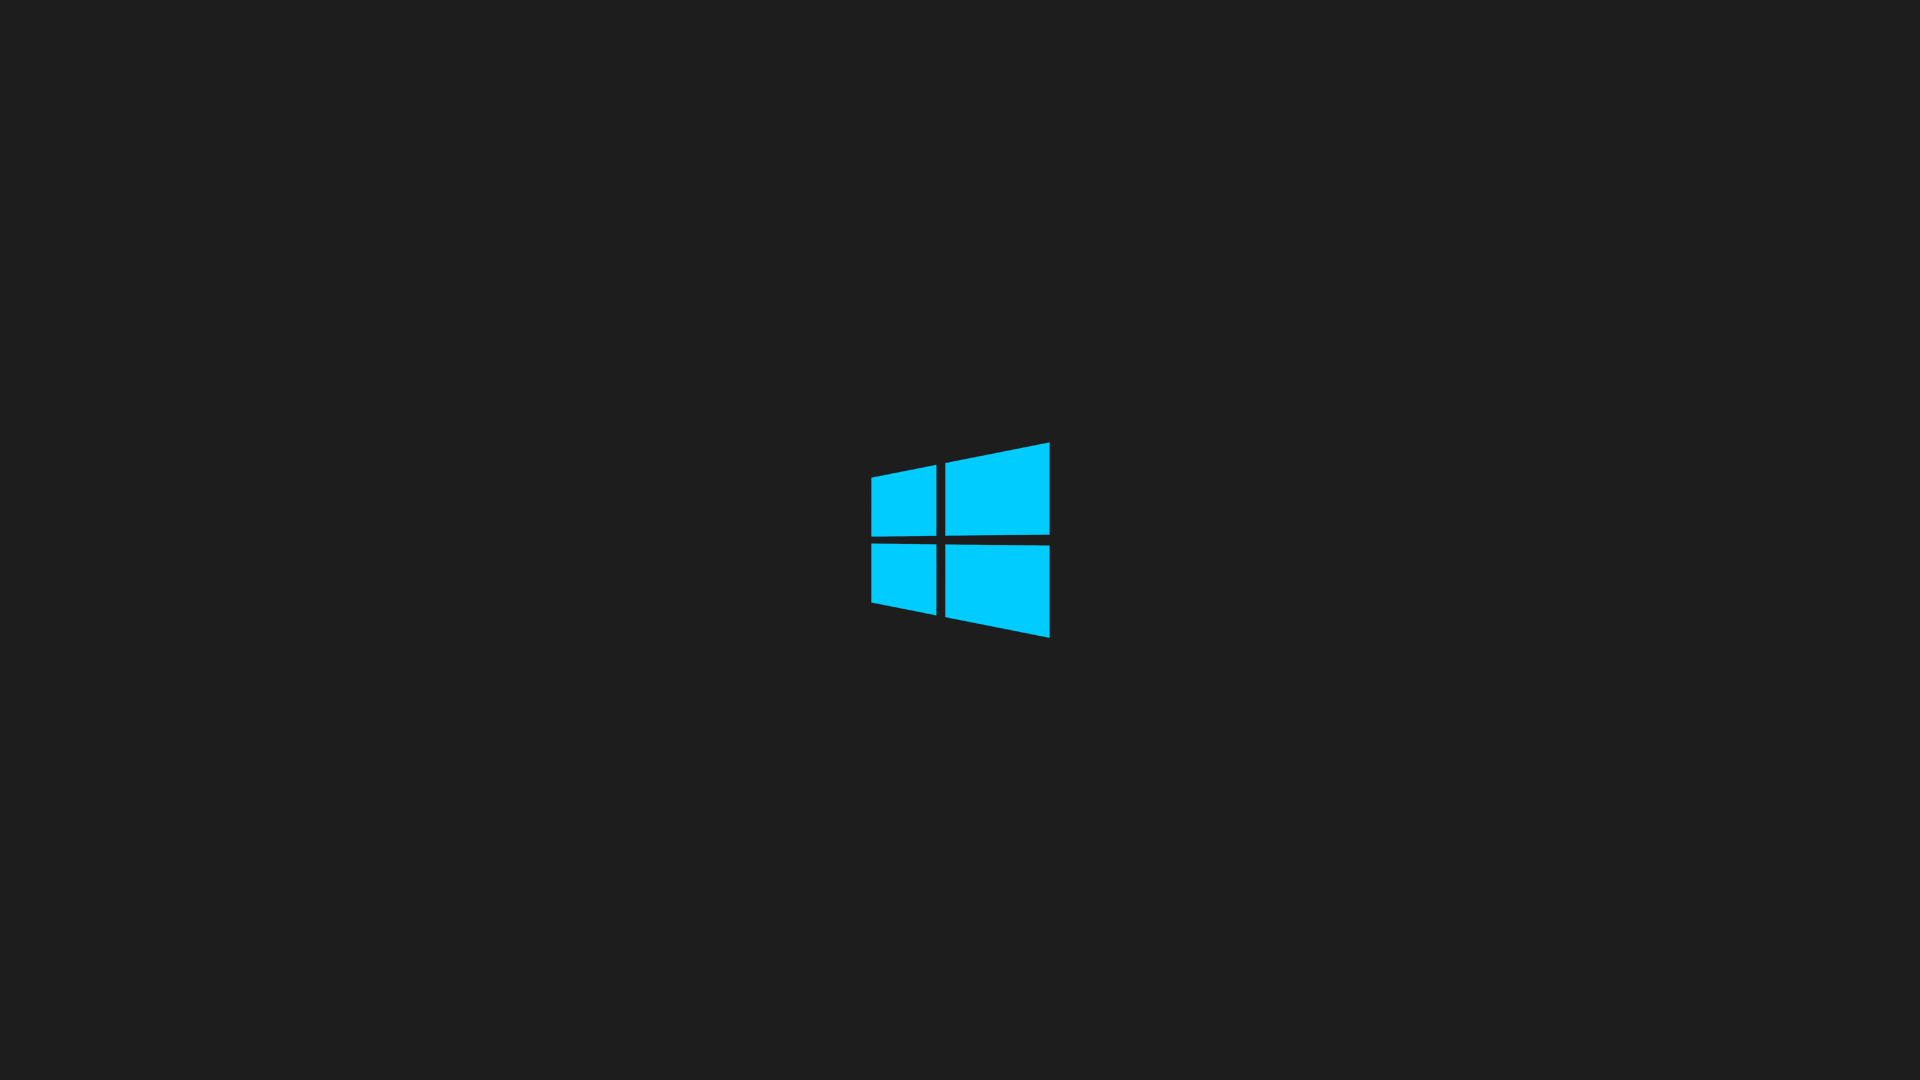 Wallpaper For > Windows 8 Background Dark